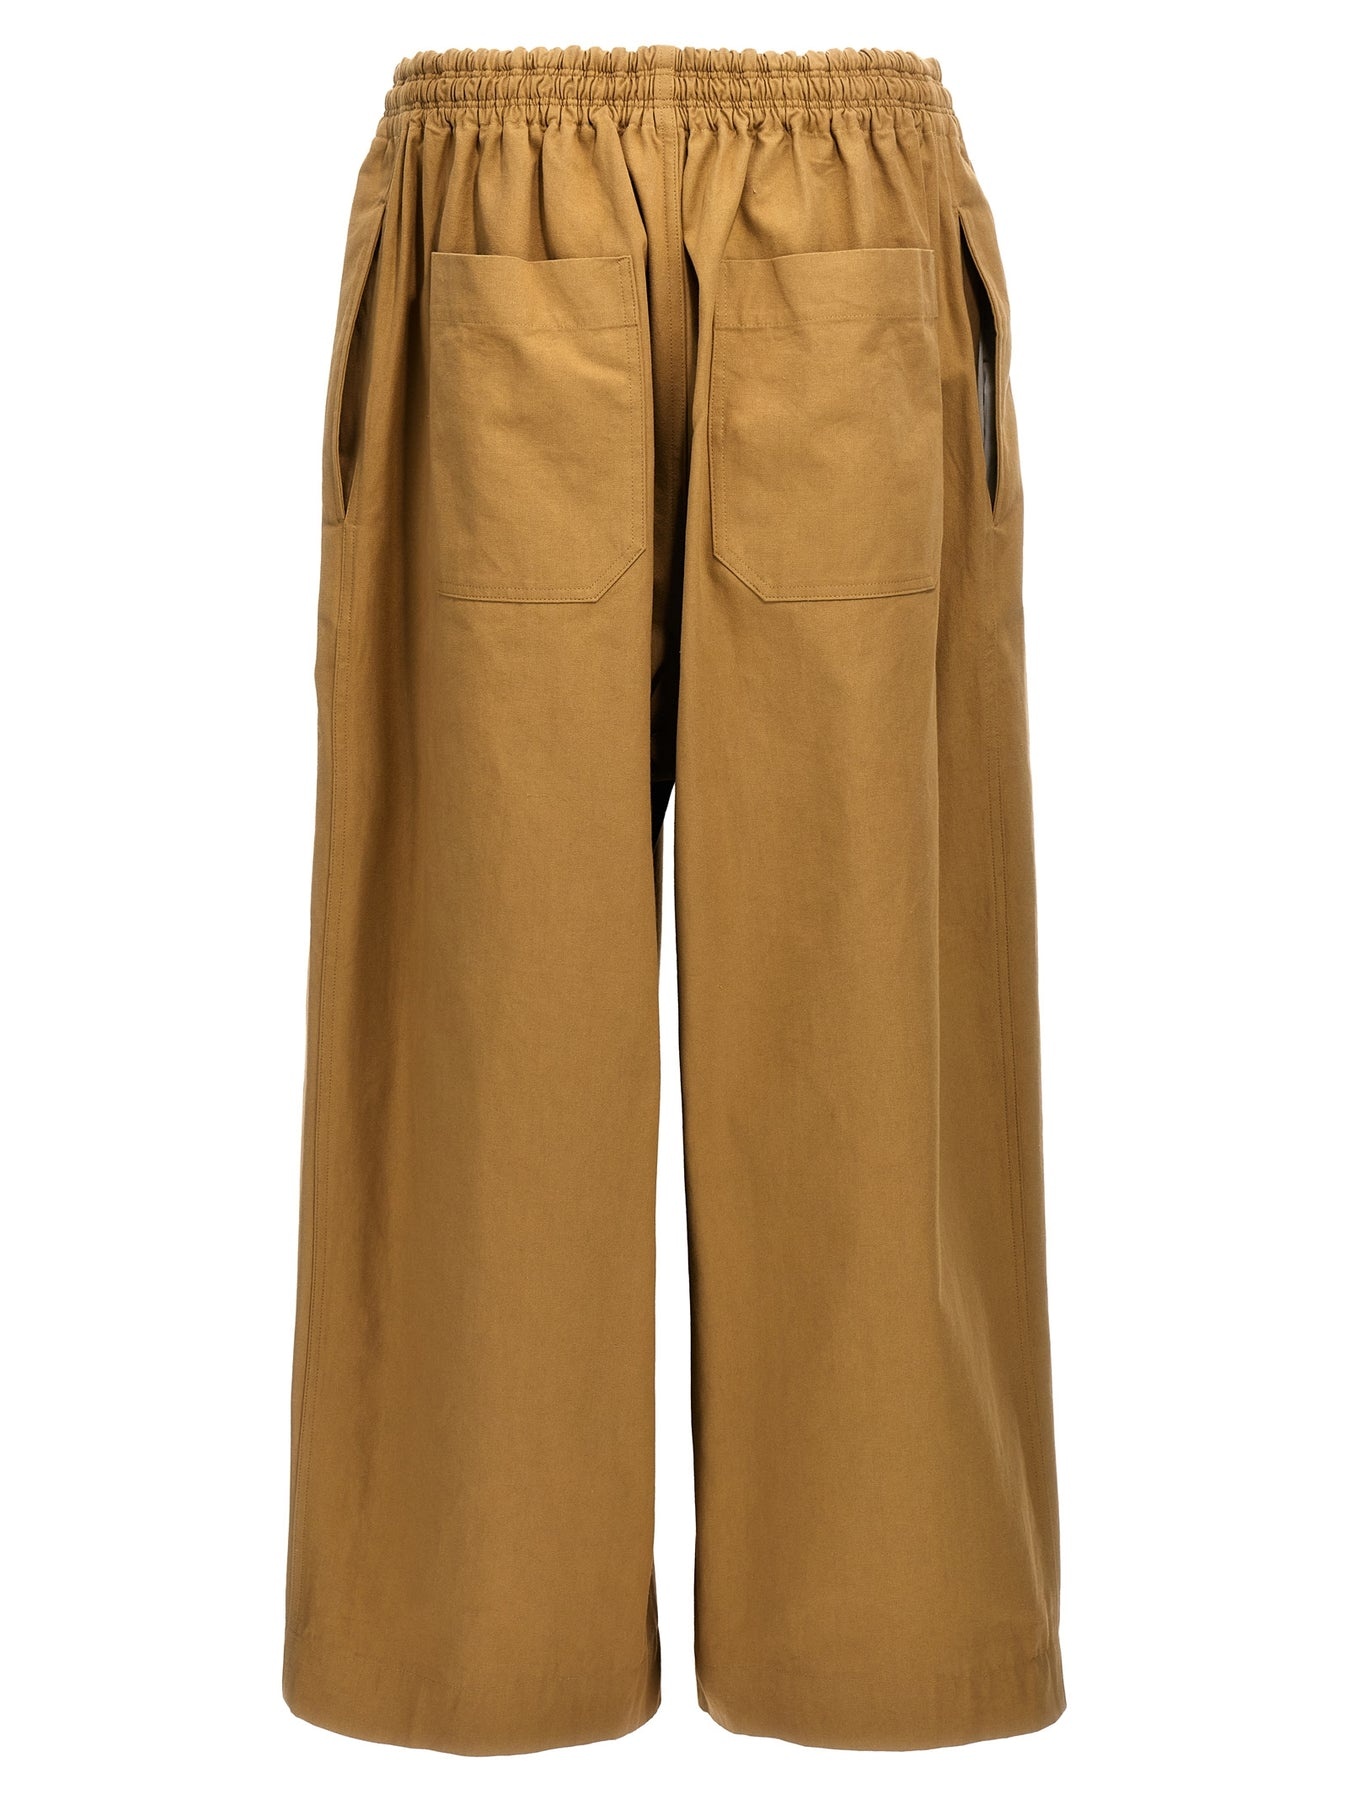 Cotton Trousers Pants Beige - 2